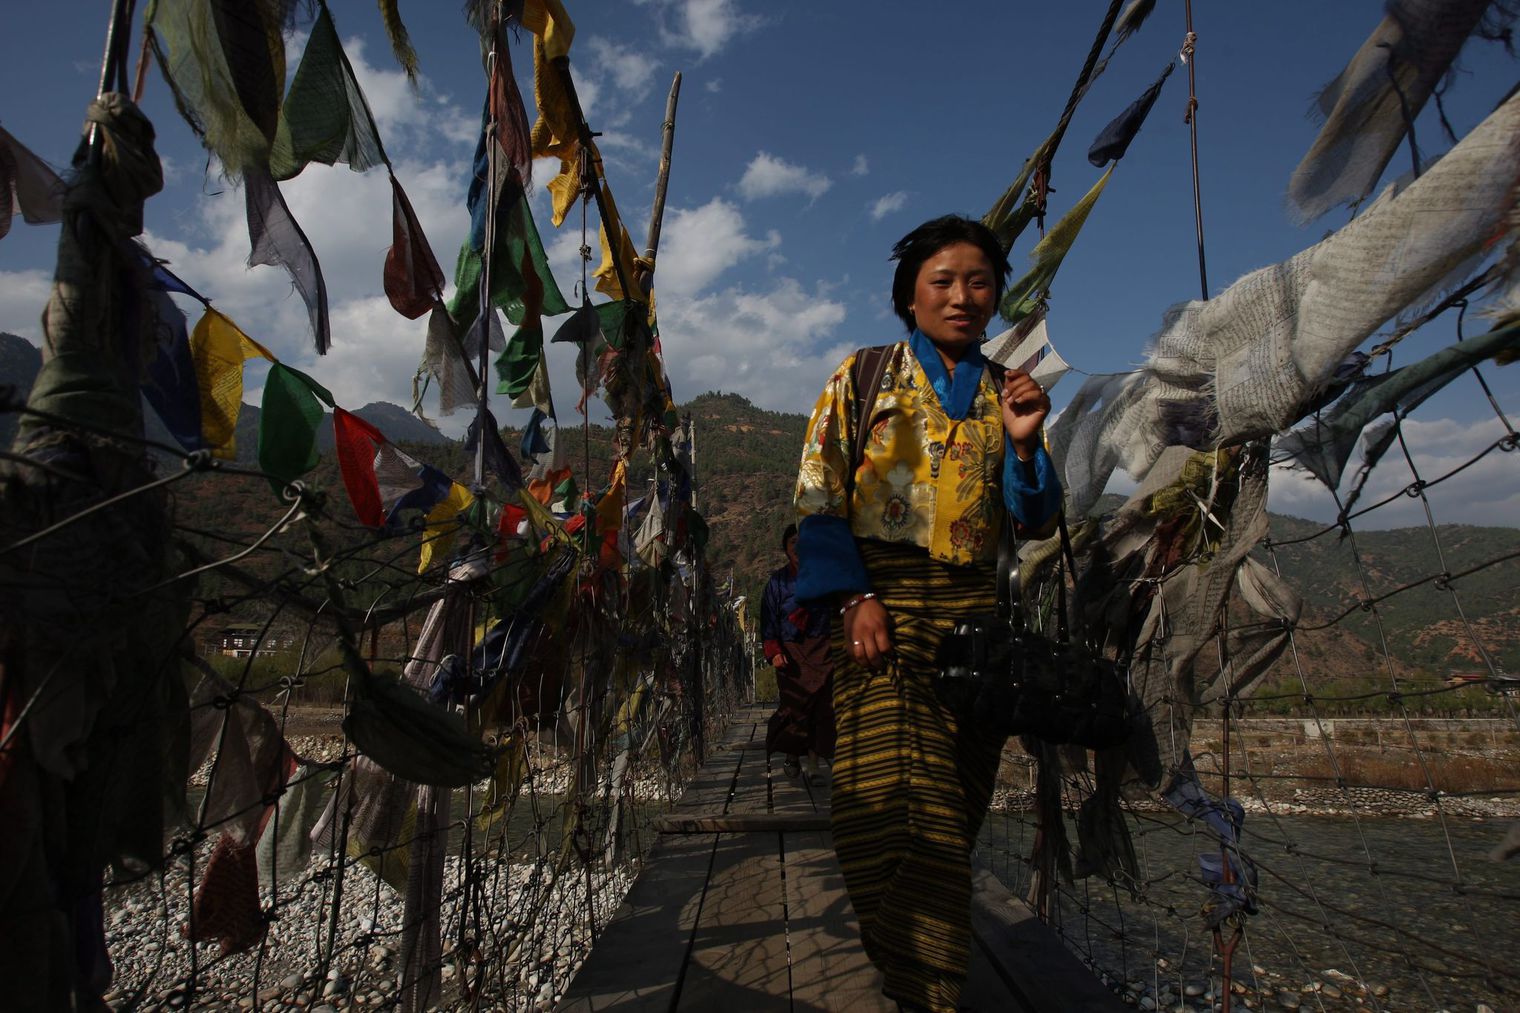 decouvrir le bhoutan, tourisme et tenue traditionelle